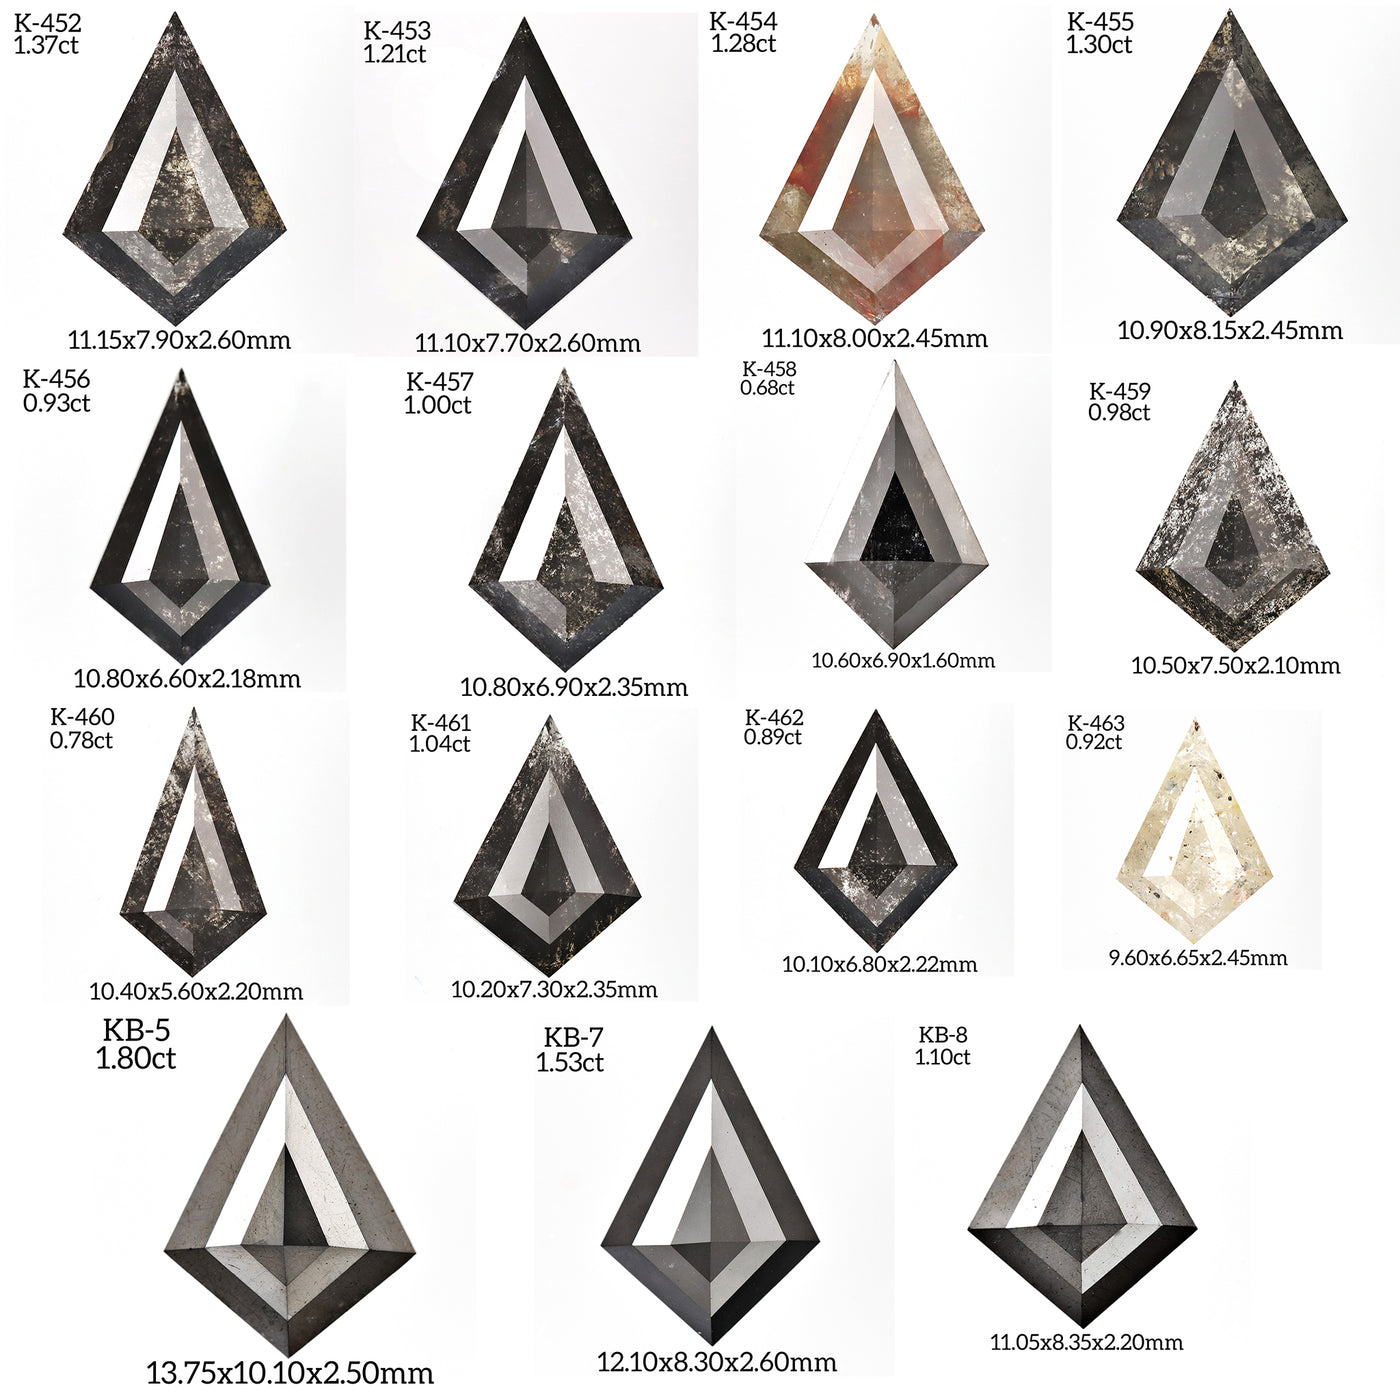 K455 - Salt and pepper kite diamond